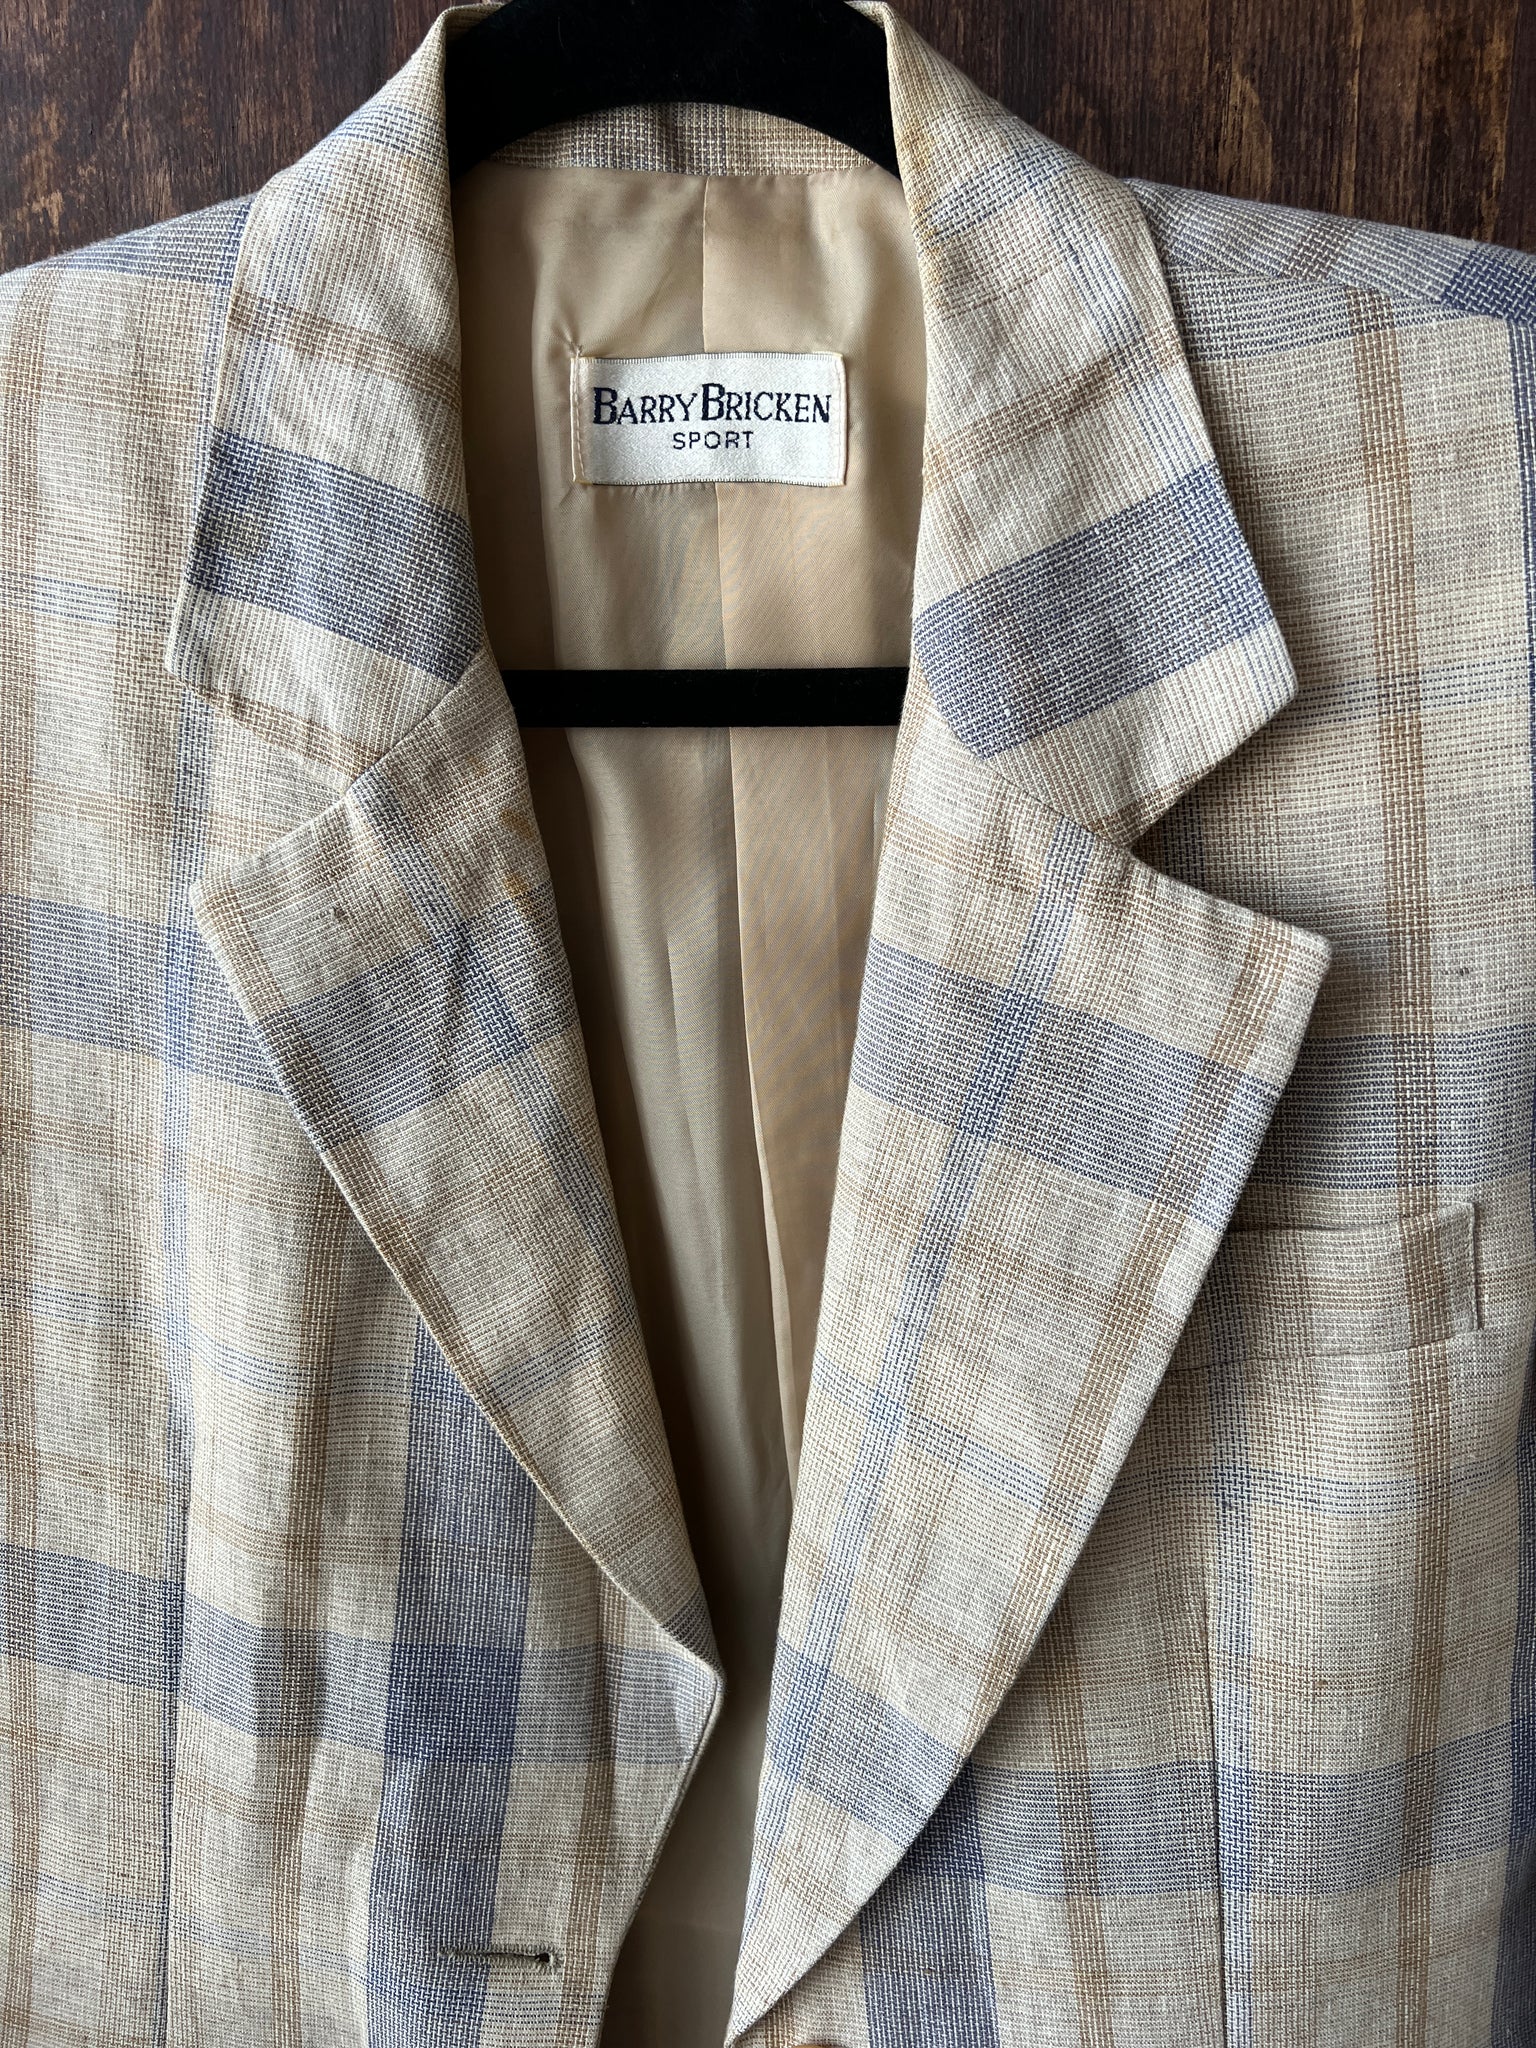 1990s -JACKET- Barry Bricken linen plaid blazer